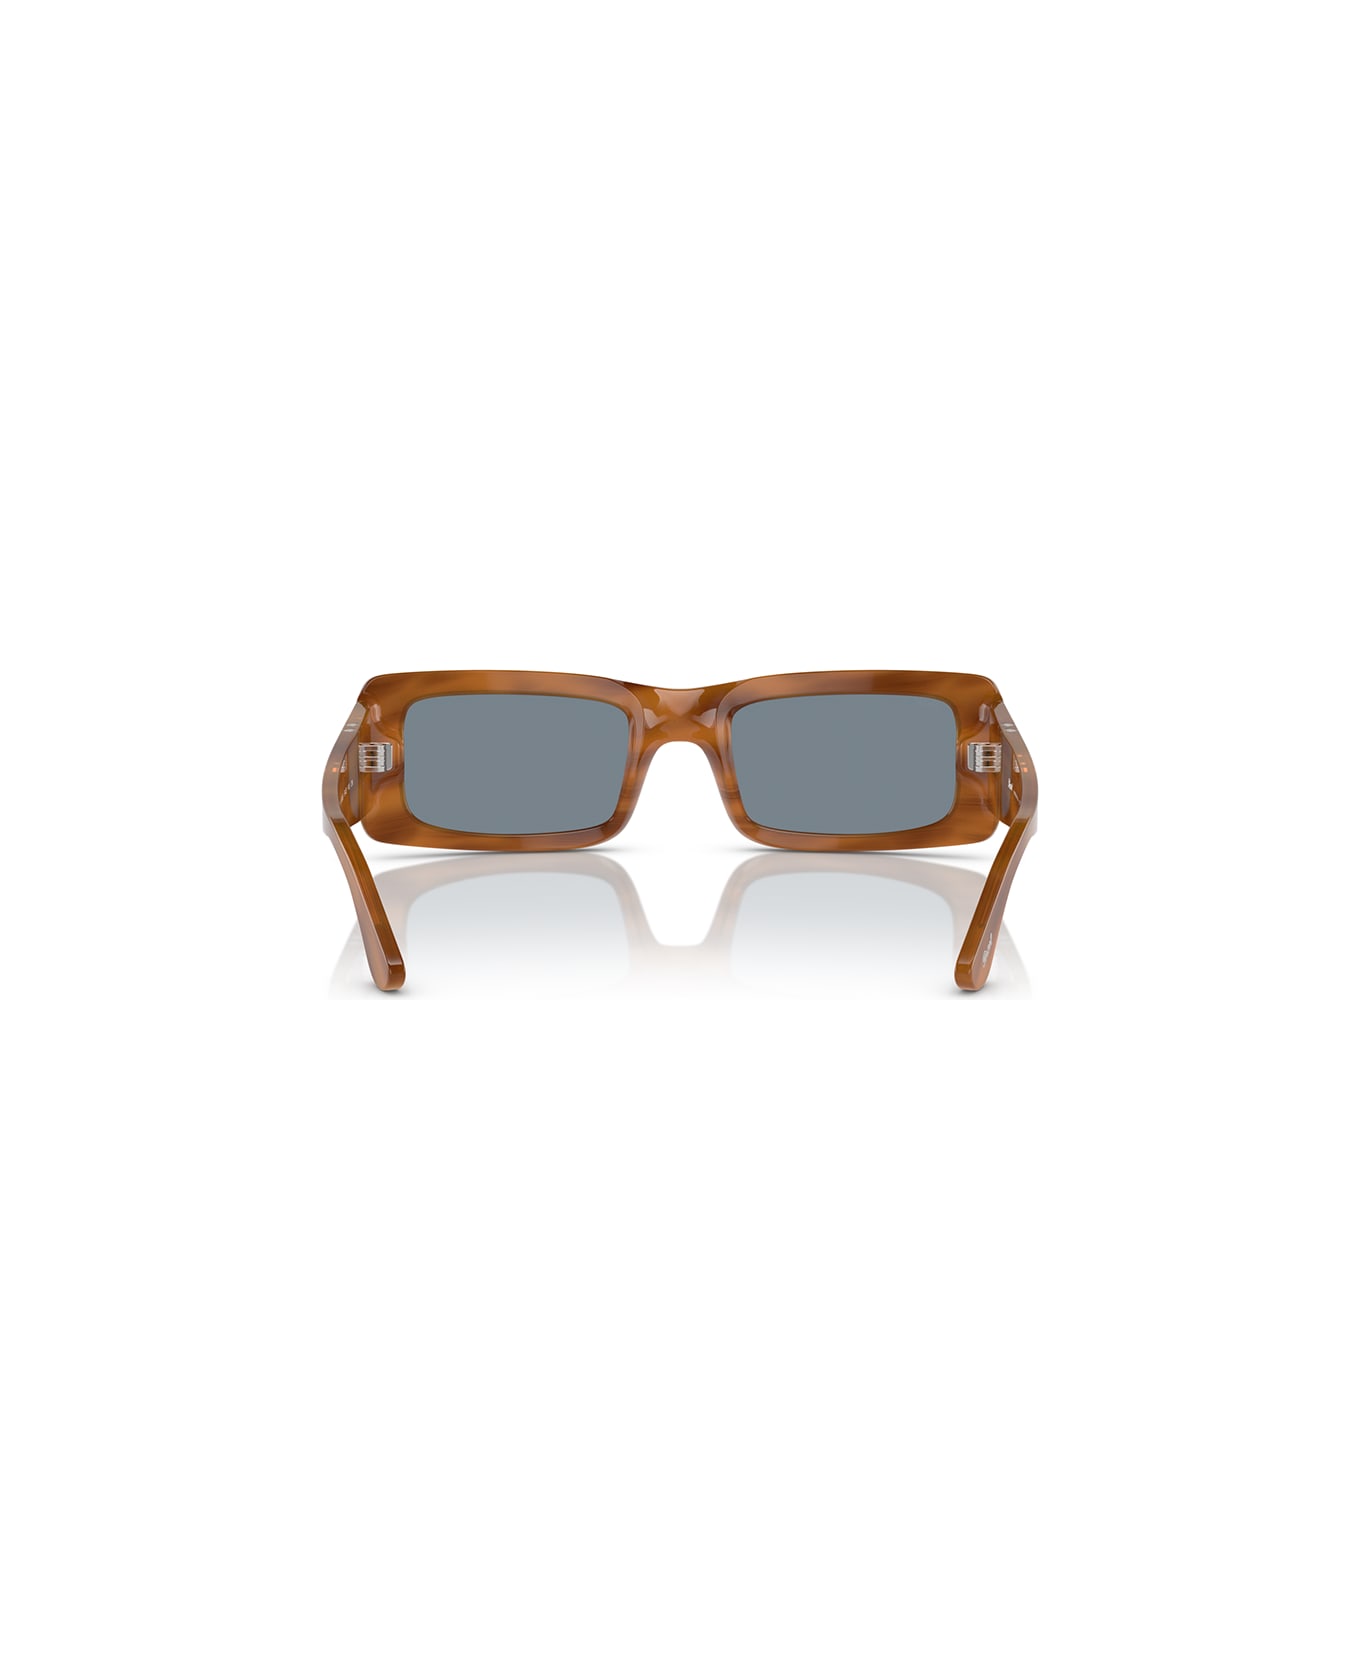 Persol Sunglasses - Marrone striato/Azzurro